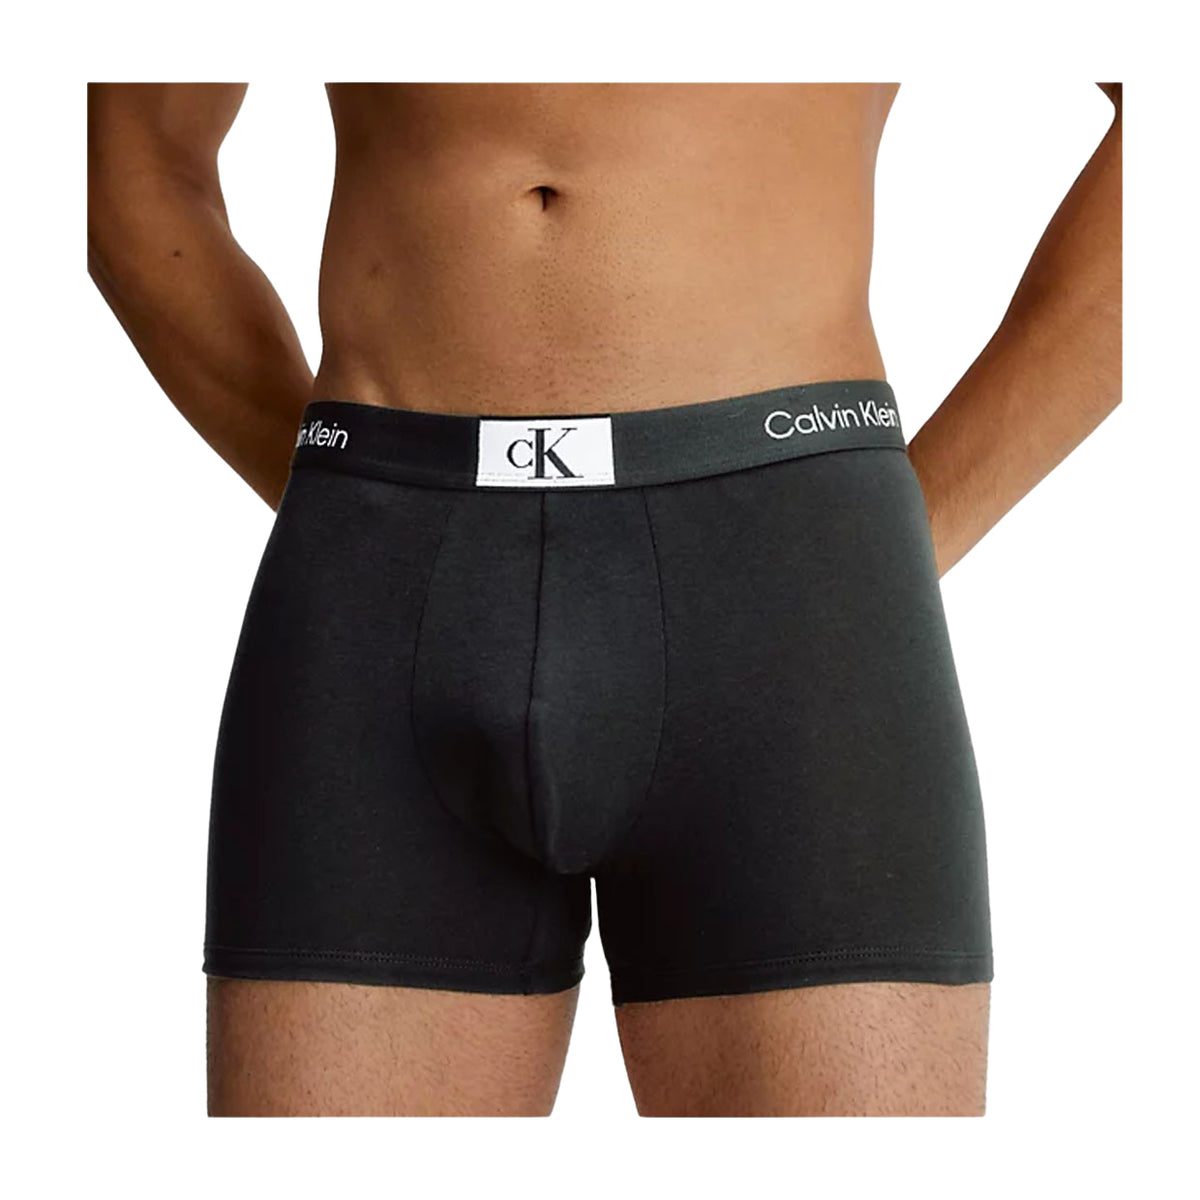 Calvin Klein Men's Boxers (3-Pack) Black on Brubaker Store